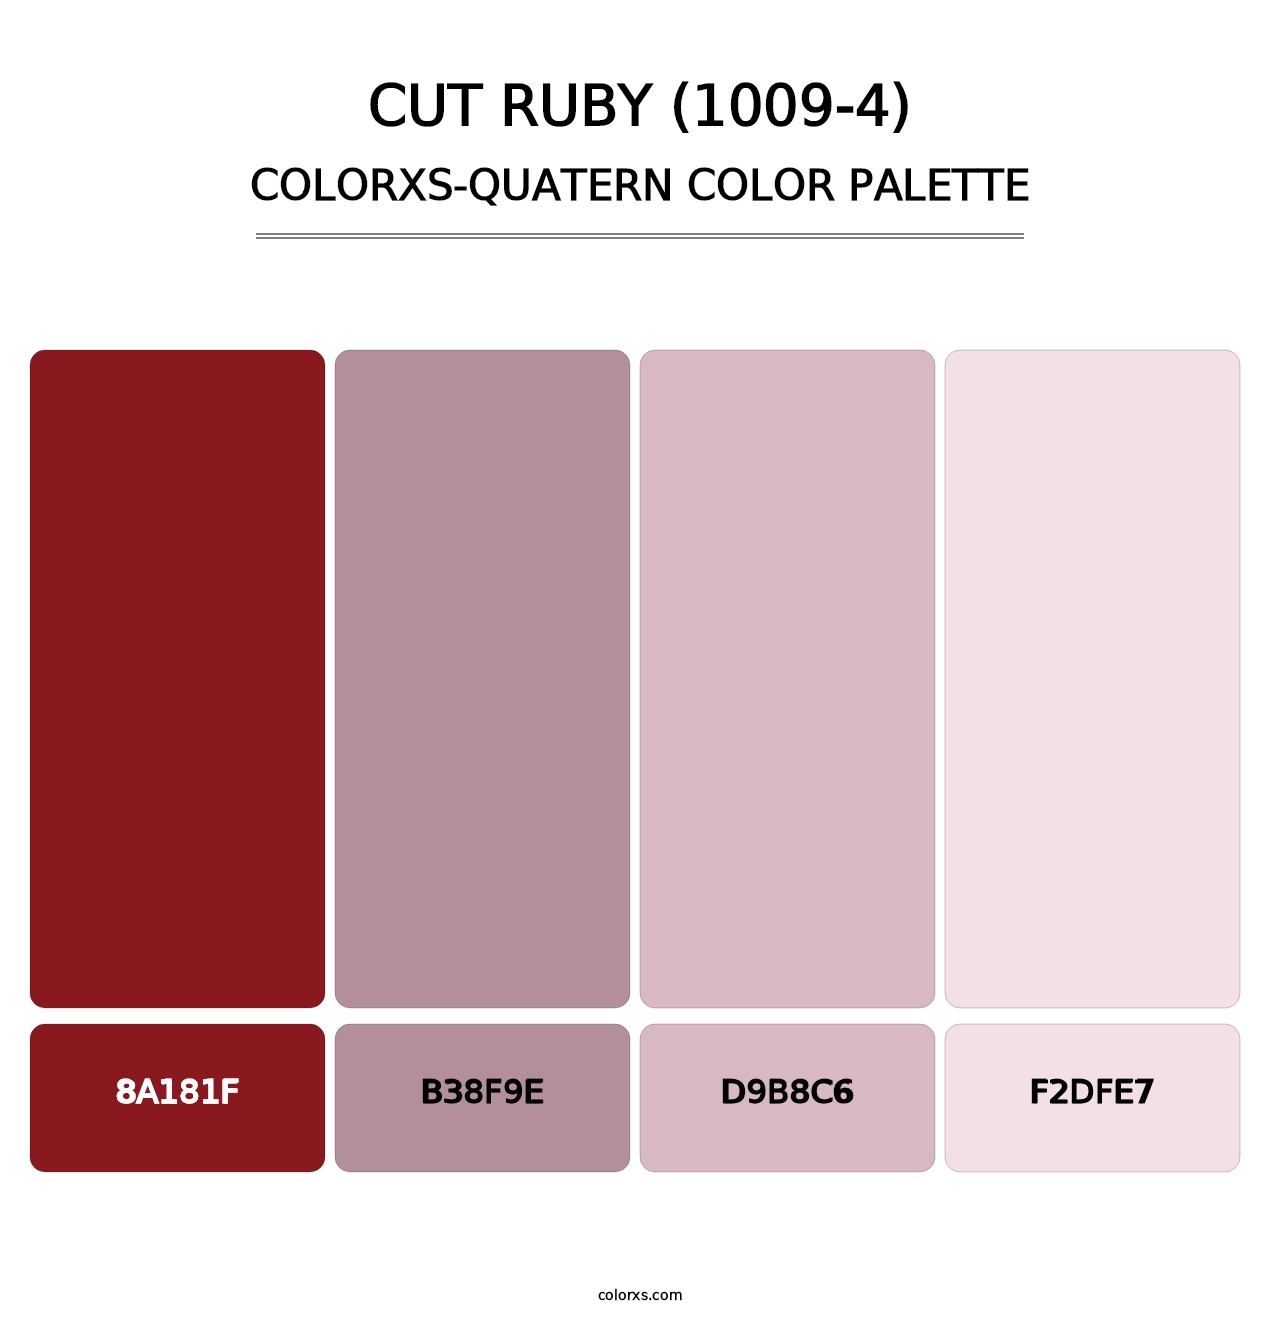 Cut Ruby (1009-4) - Colorxs Quatern Palette